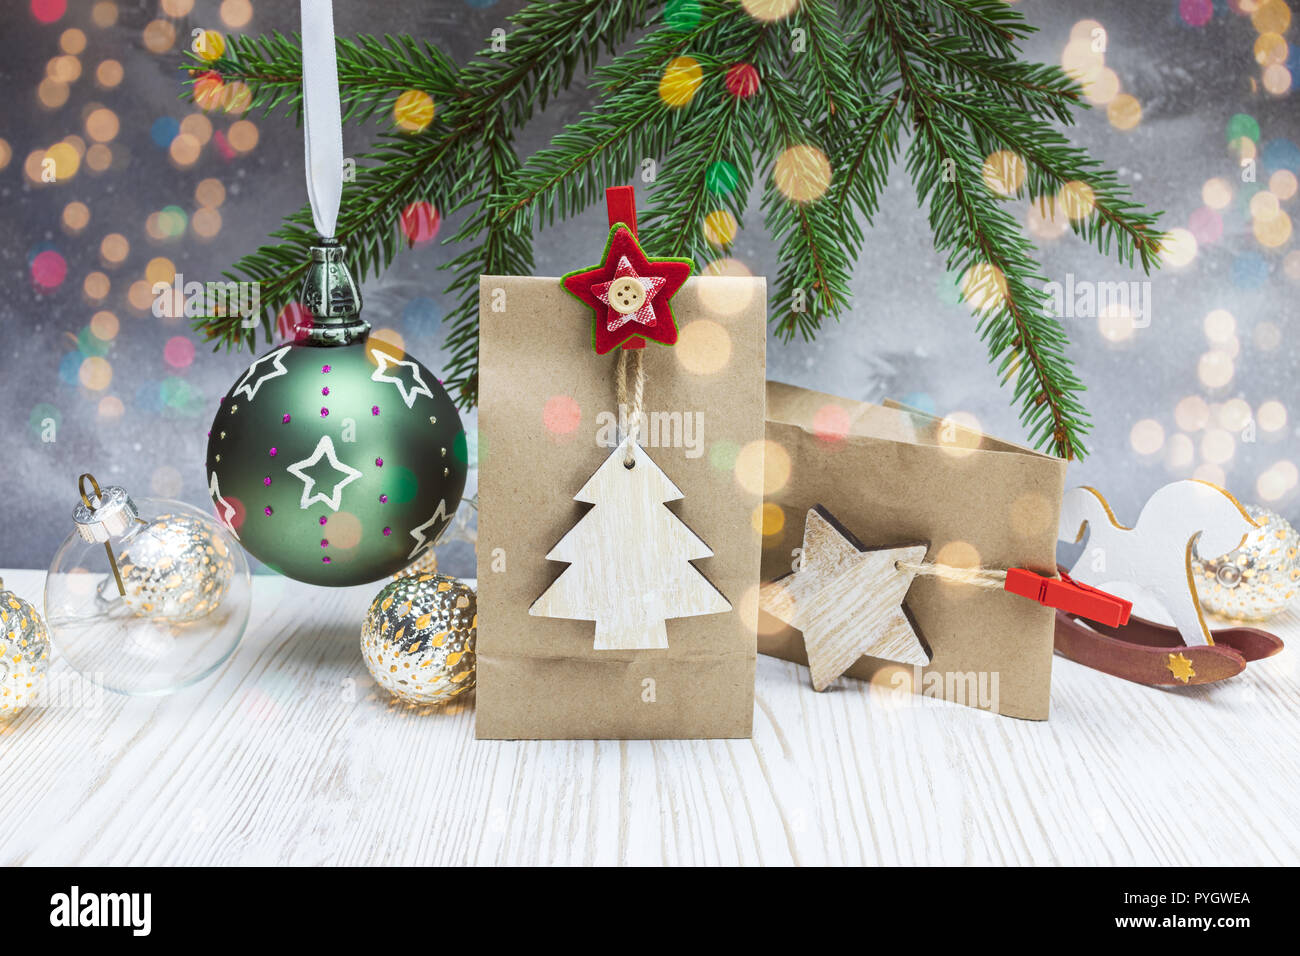 Weihnachten festliche Hintergrund mit Fir Tree Branch, Papier Geschenk Taschen, Bälle und Holzdekorationen Stockfoto